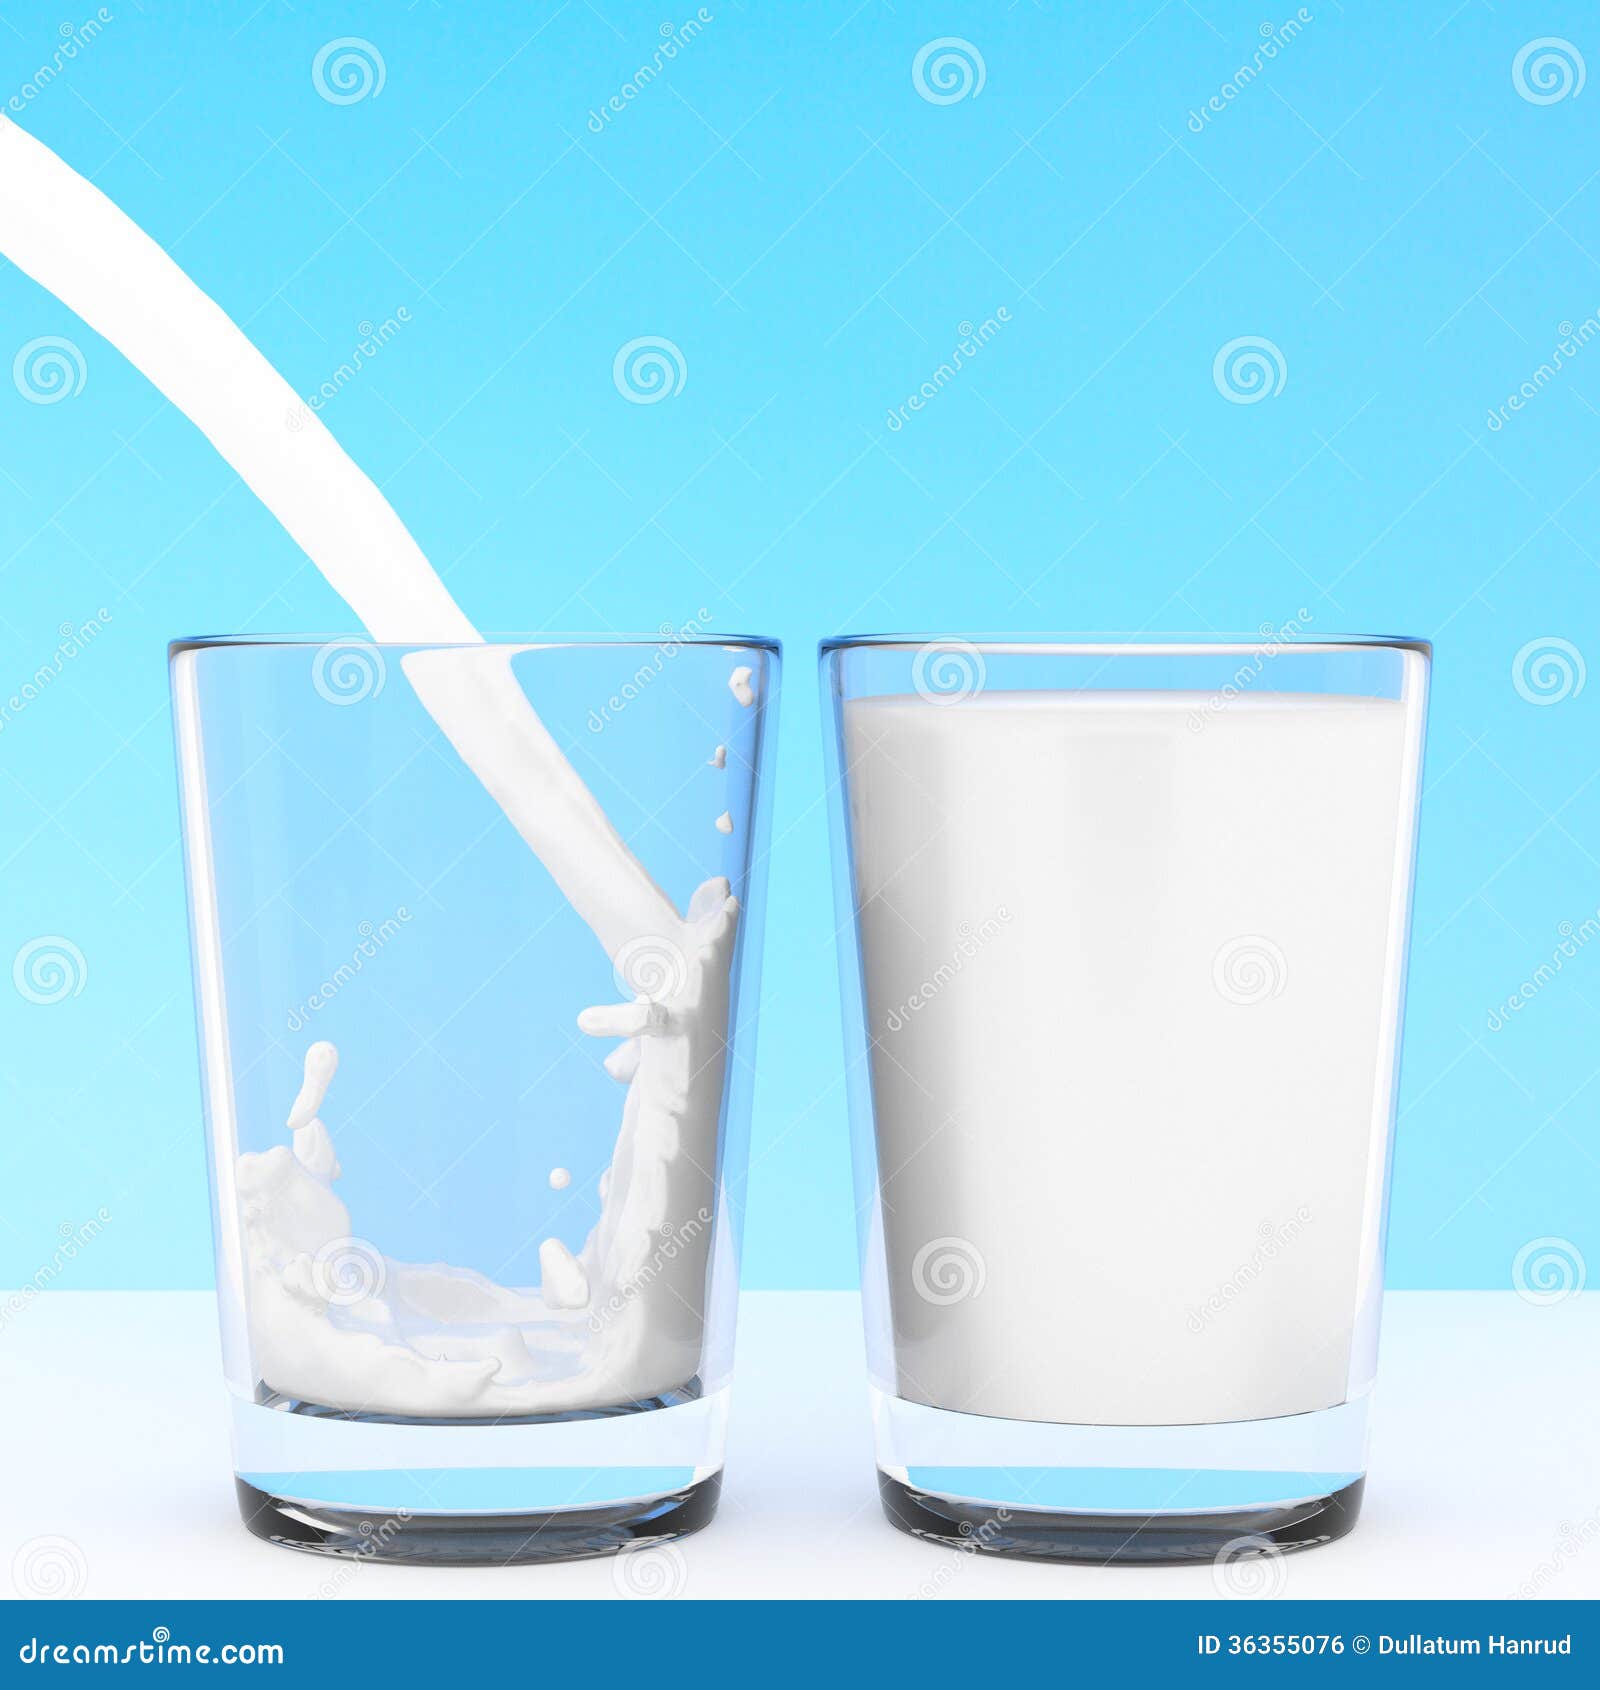 clipart milk glass - photo #41